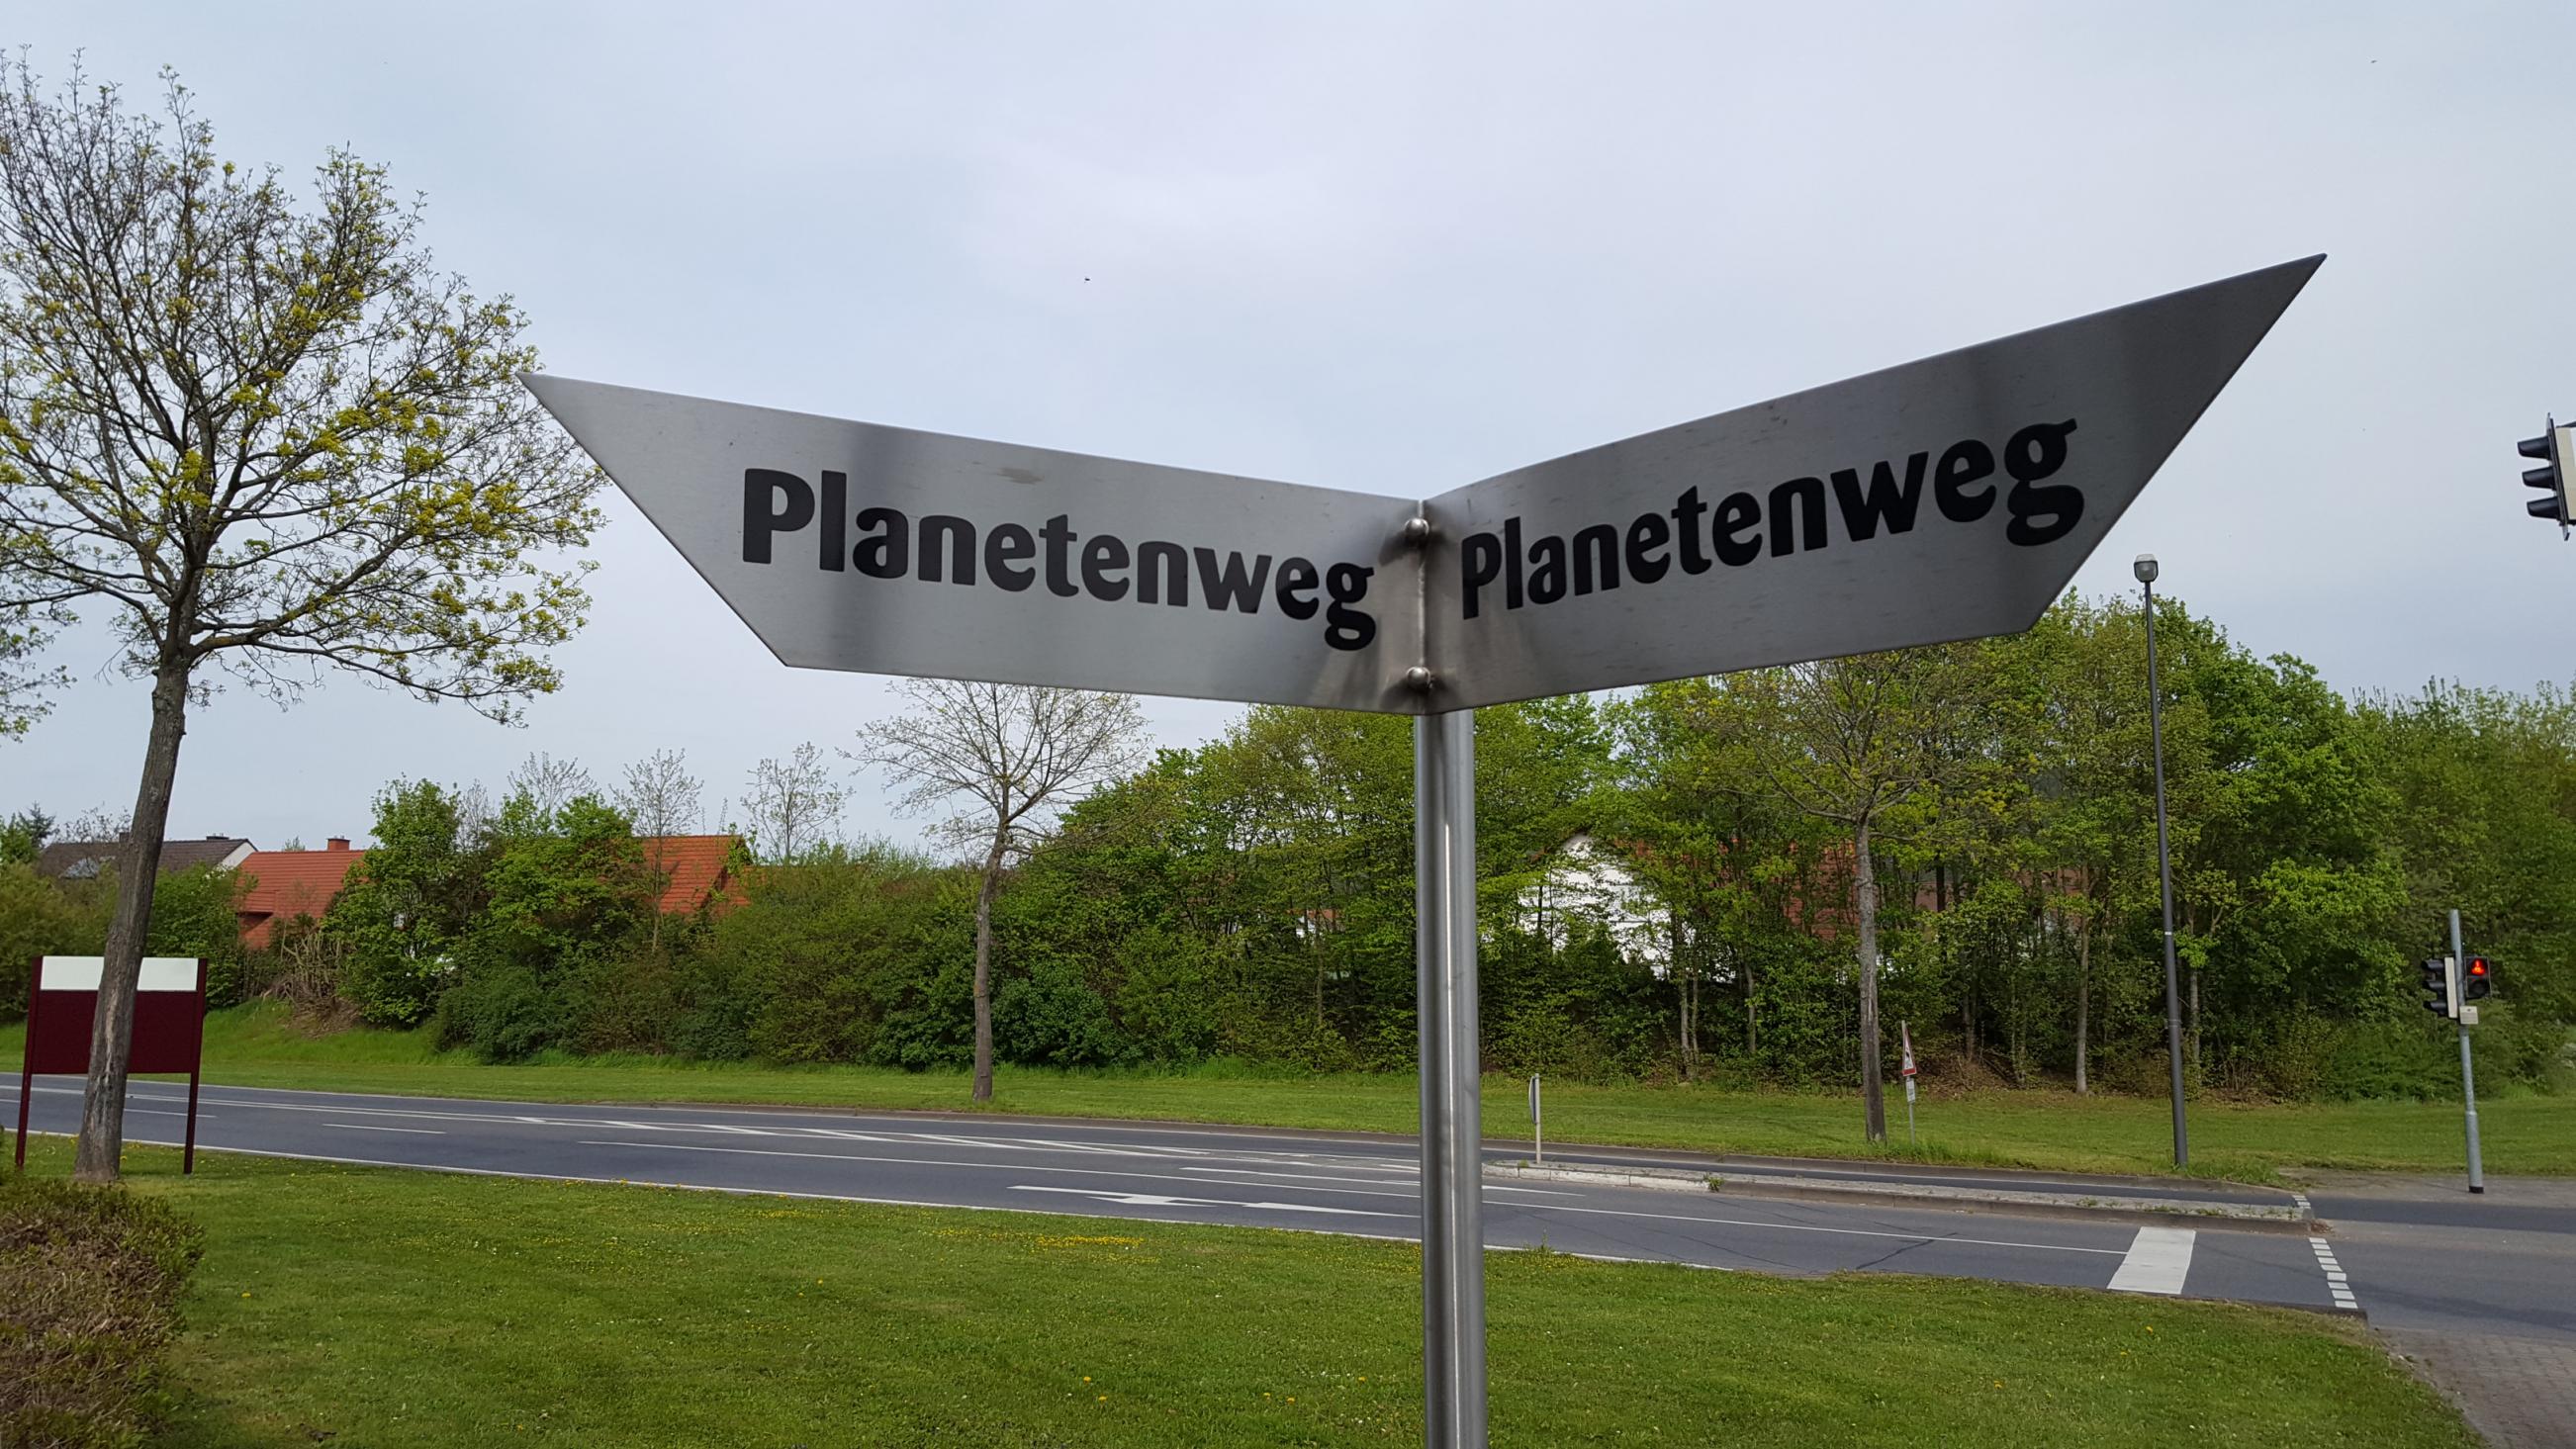 Dank Ausschilderung ist der jeweils nächste Planet nicht zu verfehlen. Foto: Stadt Erlenbach a. Main